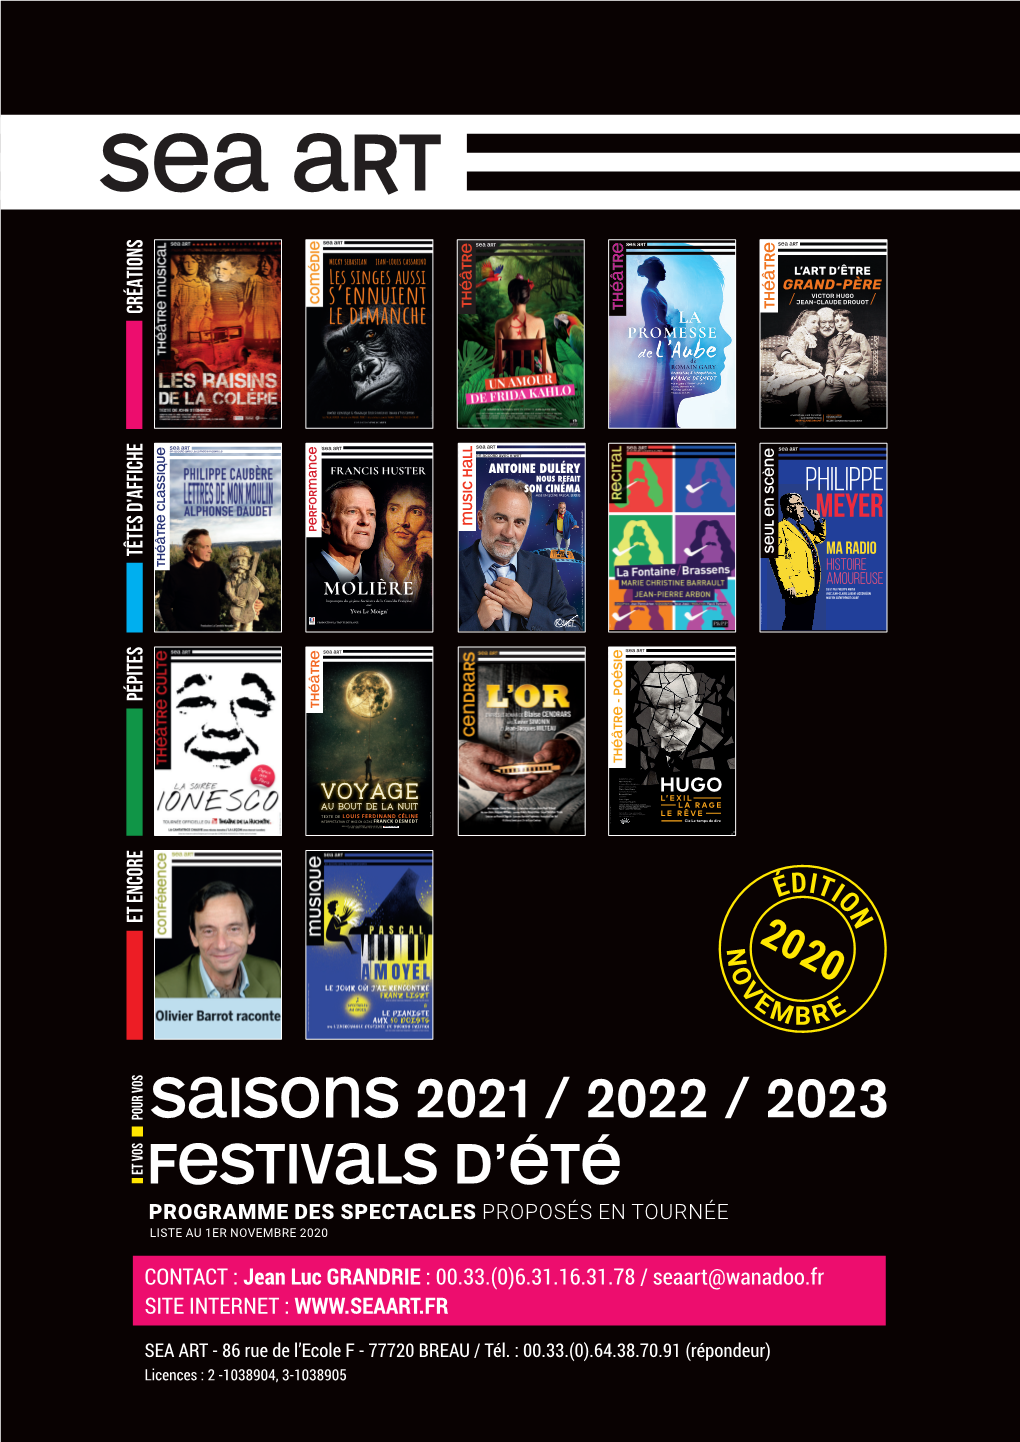 Festivals D'été Saisons 2021 / 2022 / 2023